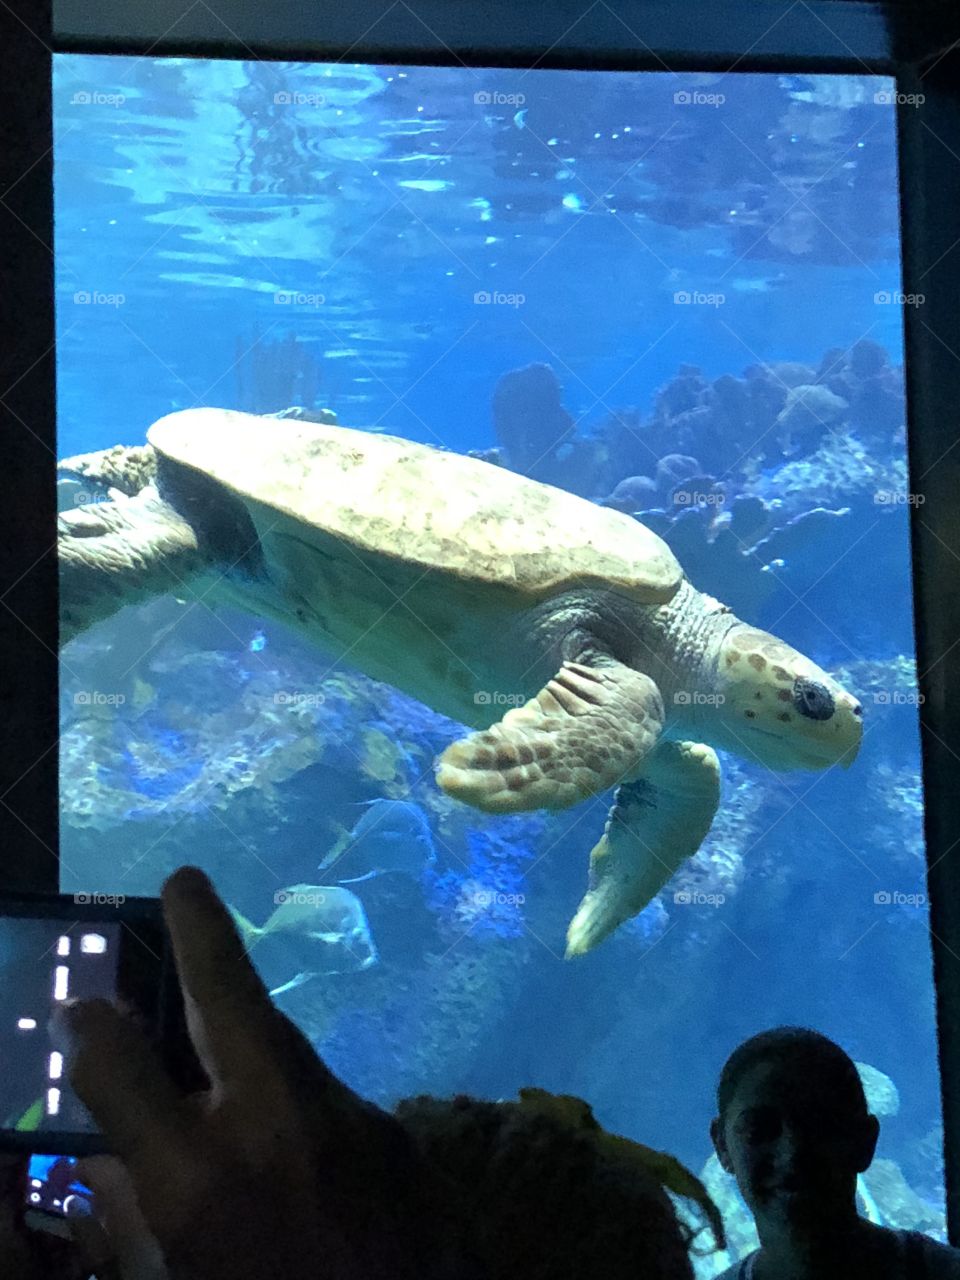 A close up shot of turtle in Boston’s aquarium!